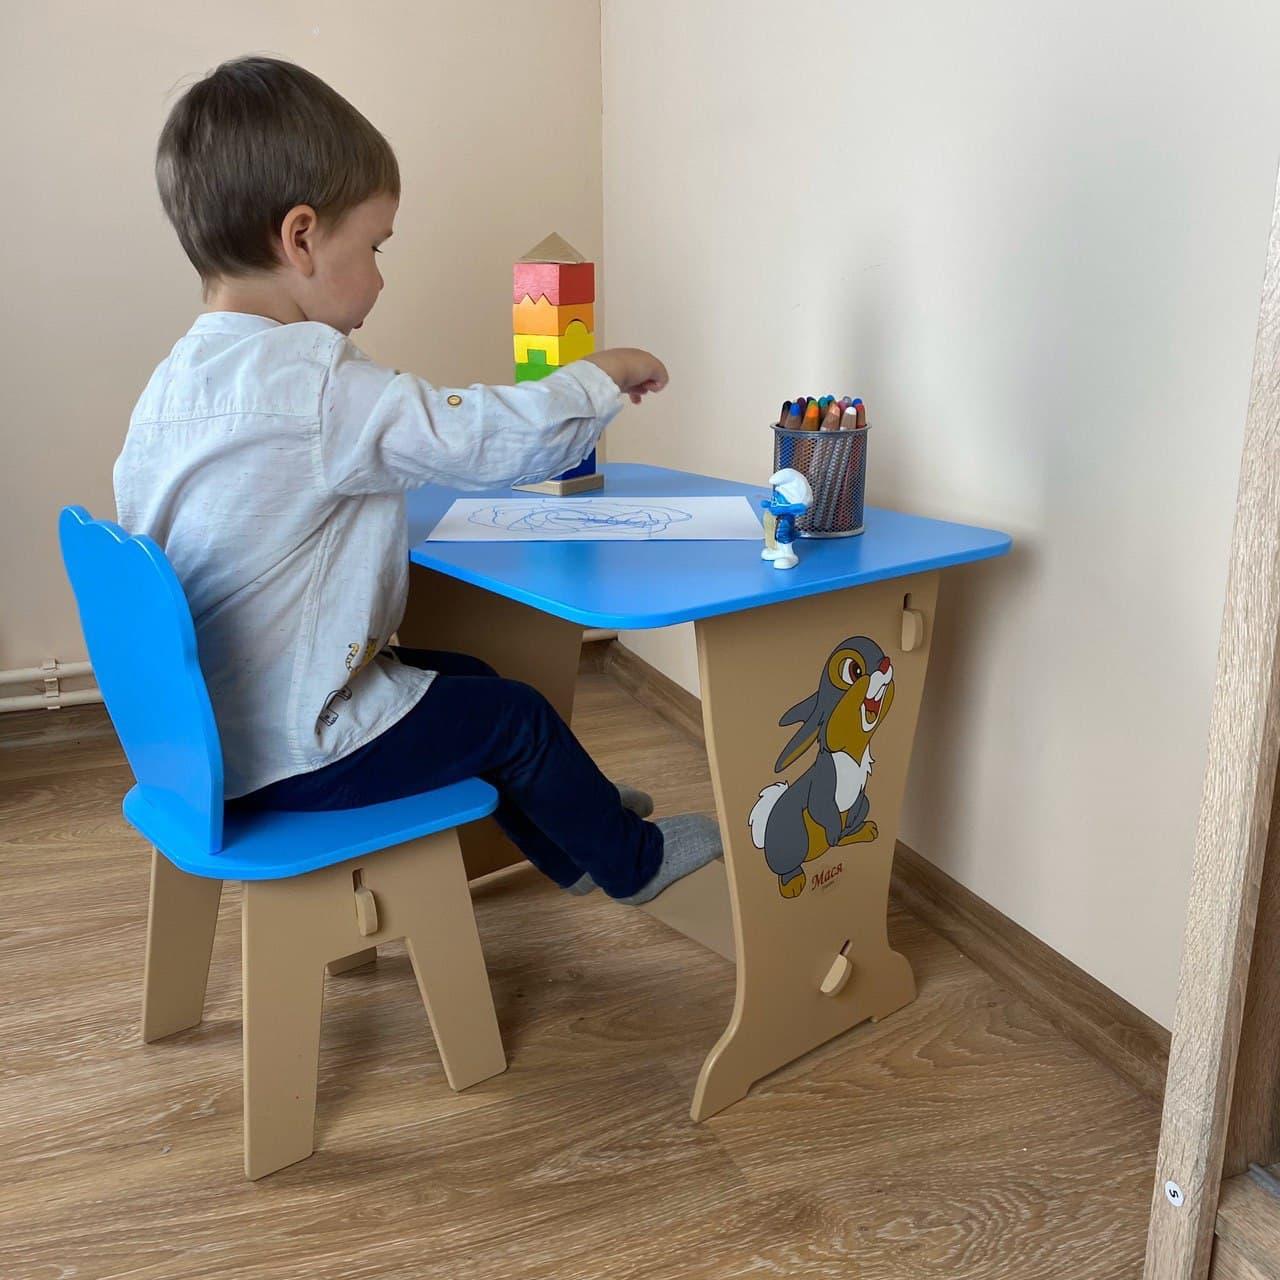 Дитячий столик парта малюок зайчик і стільчик ведмежатко.Для гри, малювання, навчання.